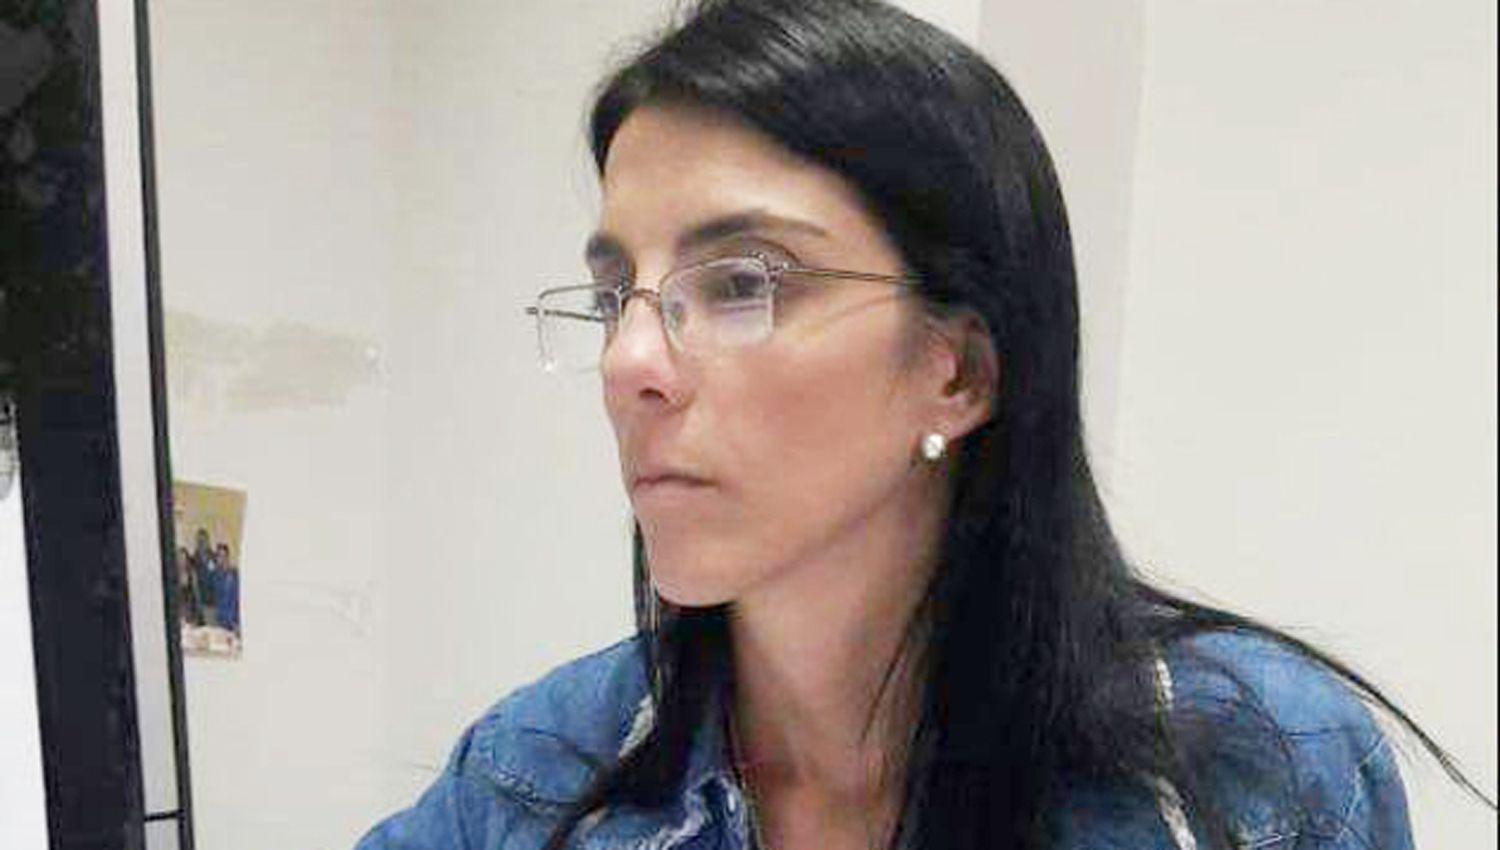 La fiscal de turno Dra Pilar Gallo ordenó la aprehensión del agresor